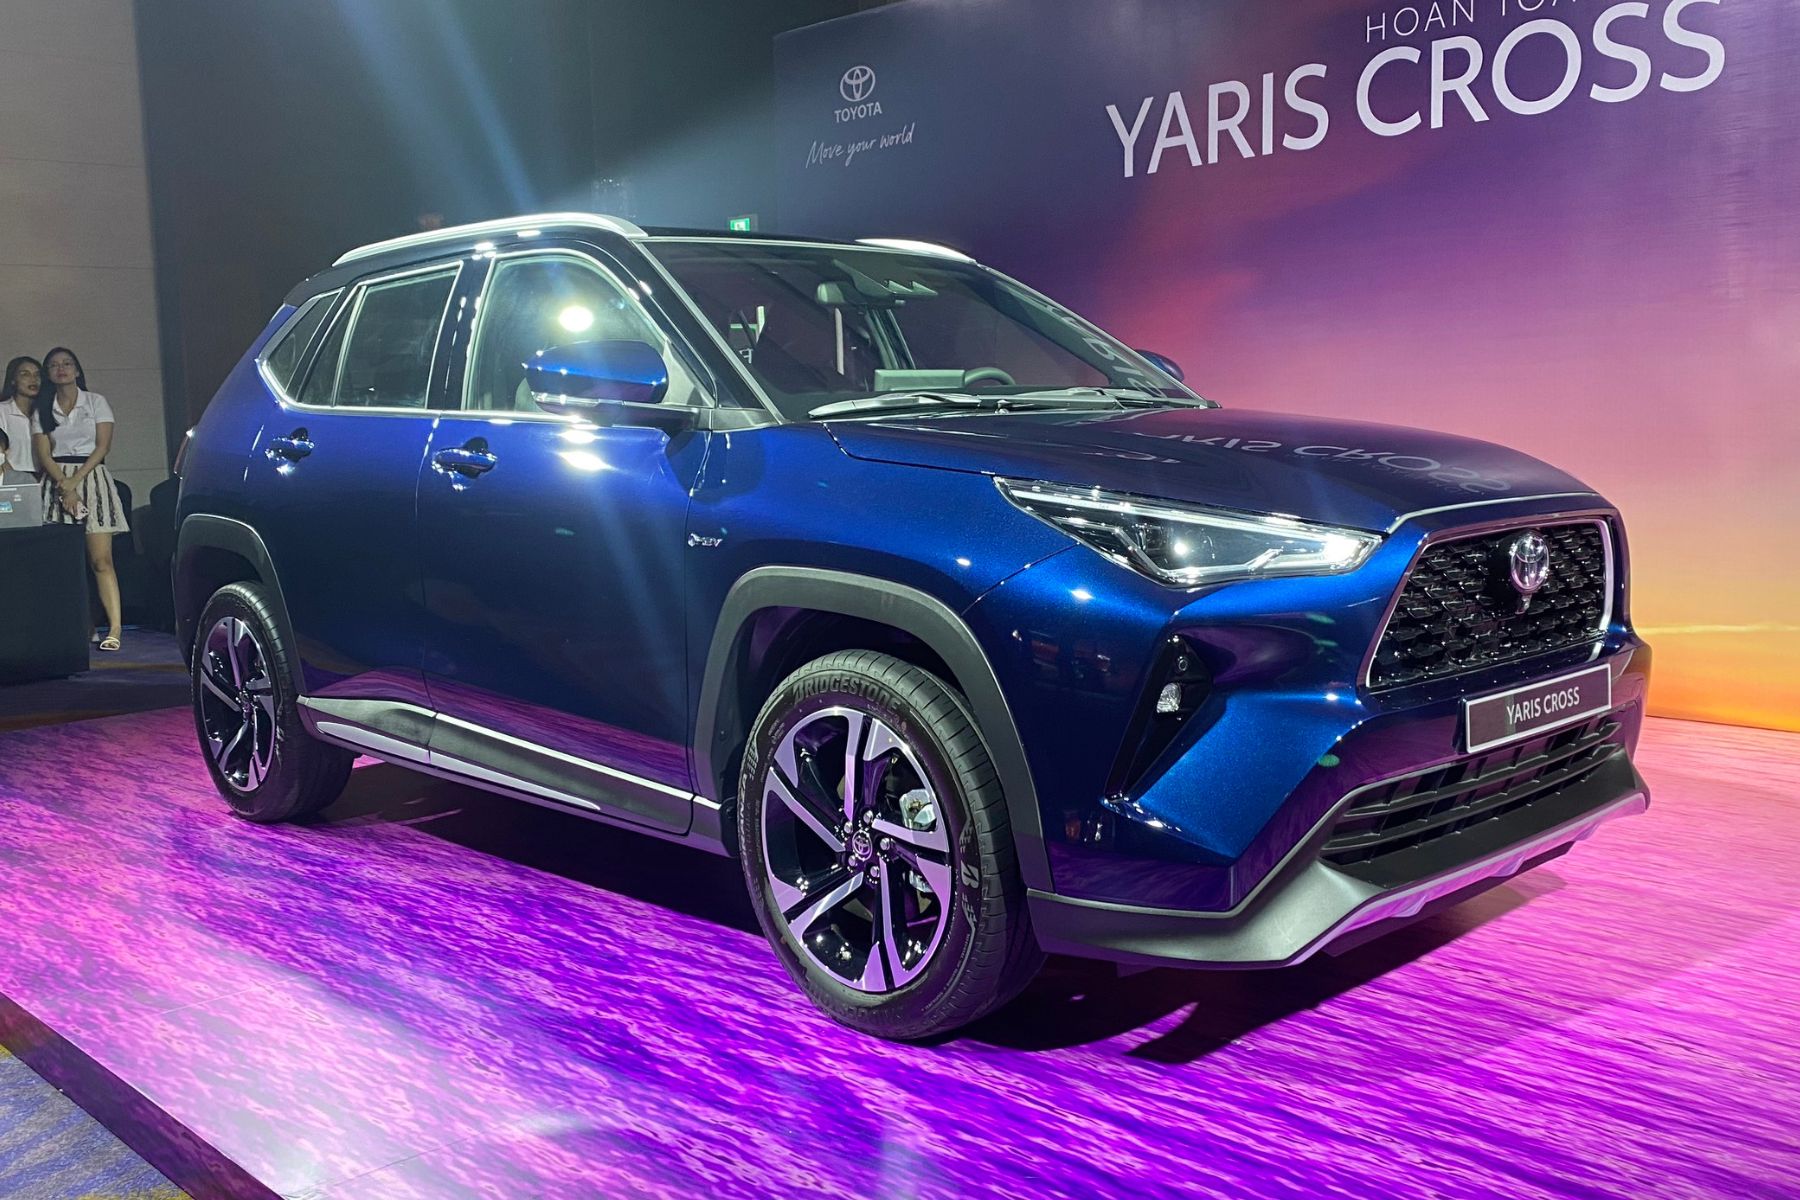 Chênh nhau hơn 100 triệu, hai biến thể của Toyota Yaris Cross vừa ra mắt có gì khác biệt? 328995